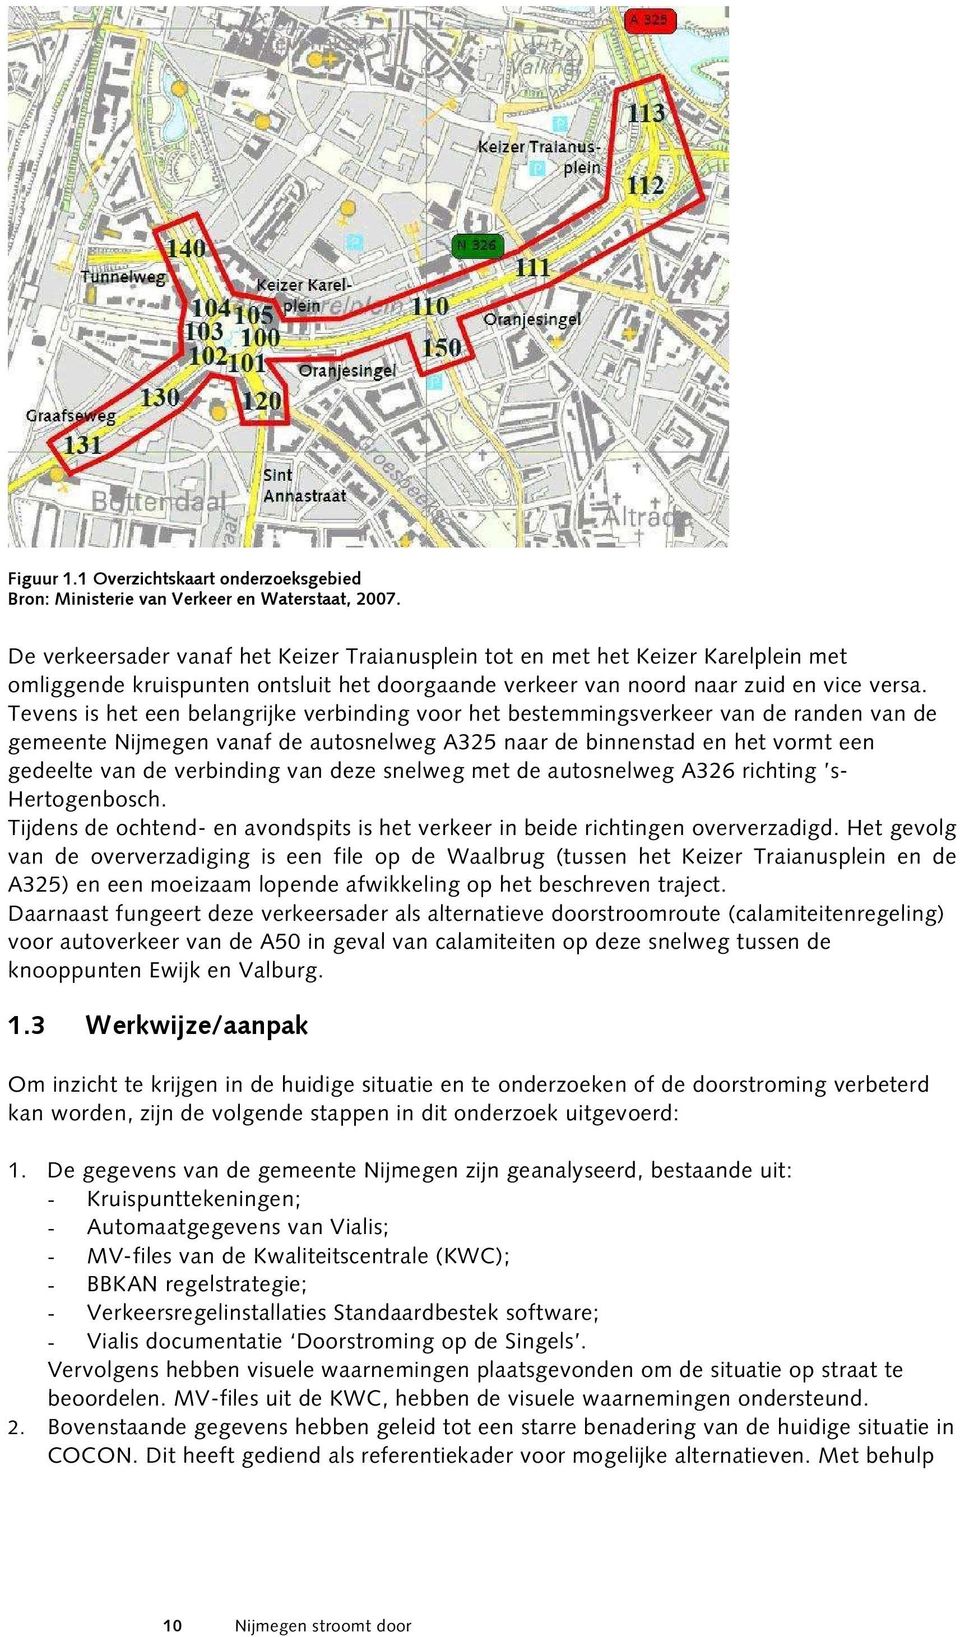 Tevens is het een belangrijke verbinding voor het bestemmingsverkeer van de randen van de gemeente Nijmegen vanaf de autosnelweg A325 naar de binnenstad en het vormt een gedeelte van de verbinding